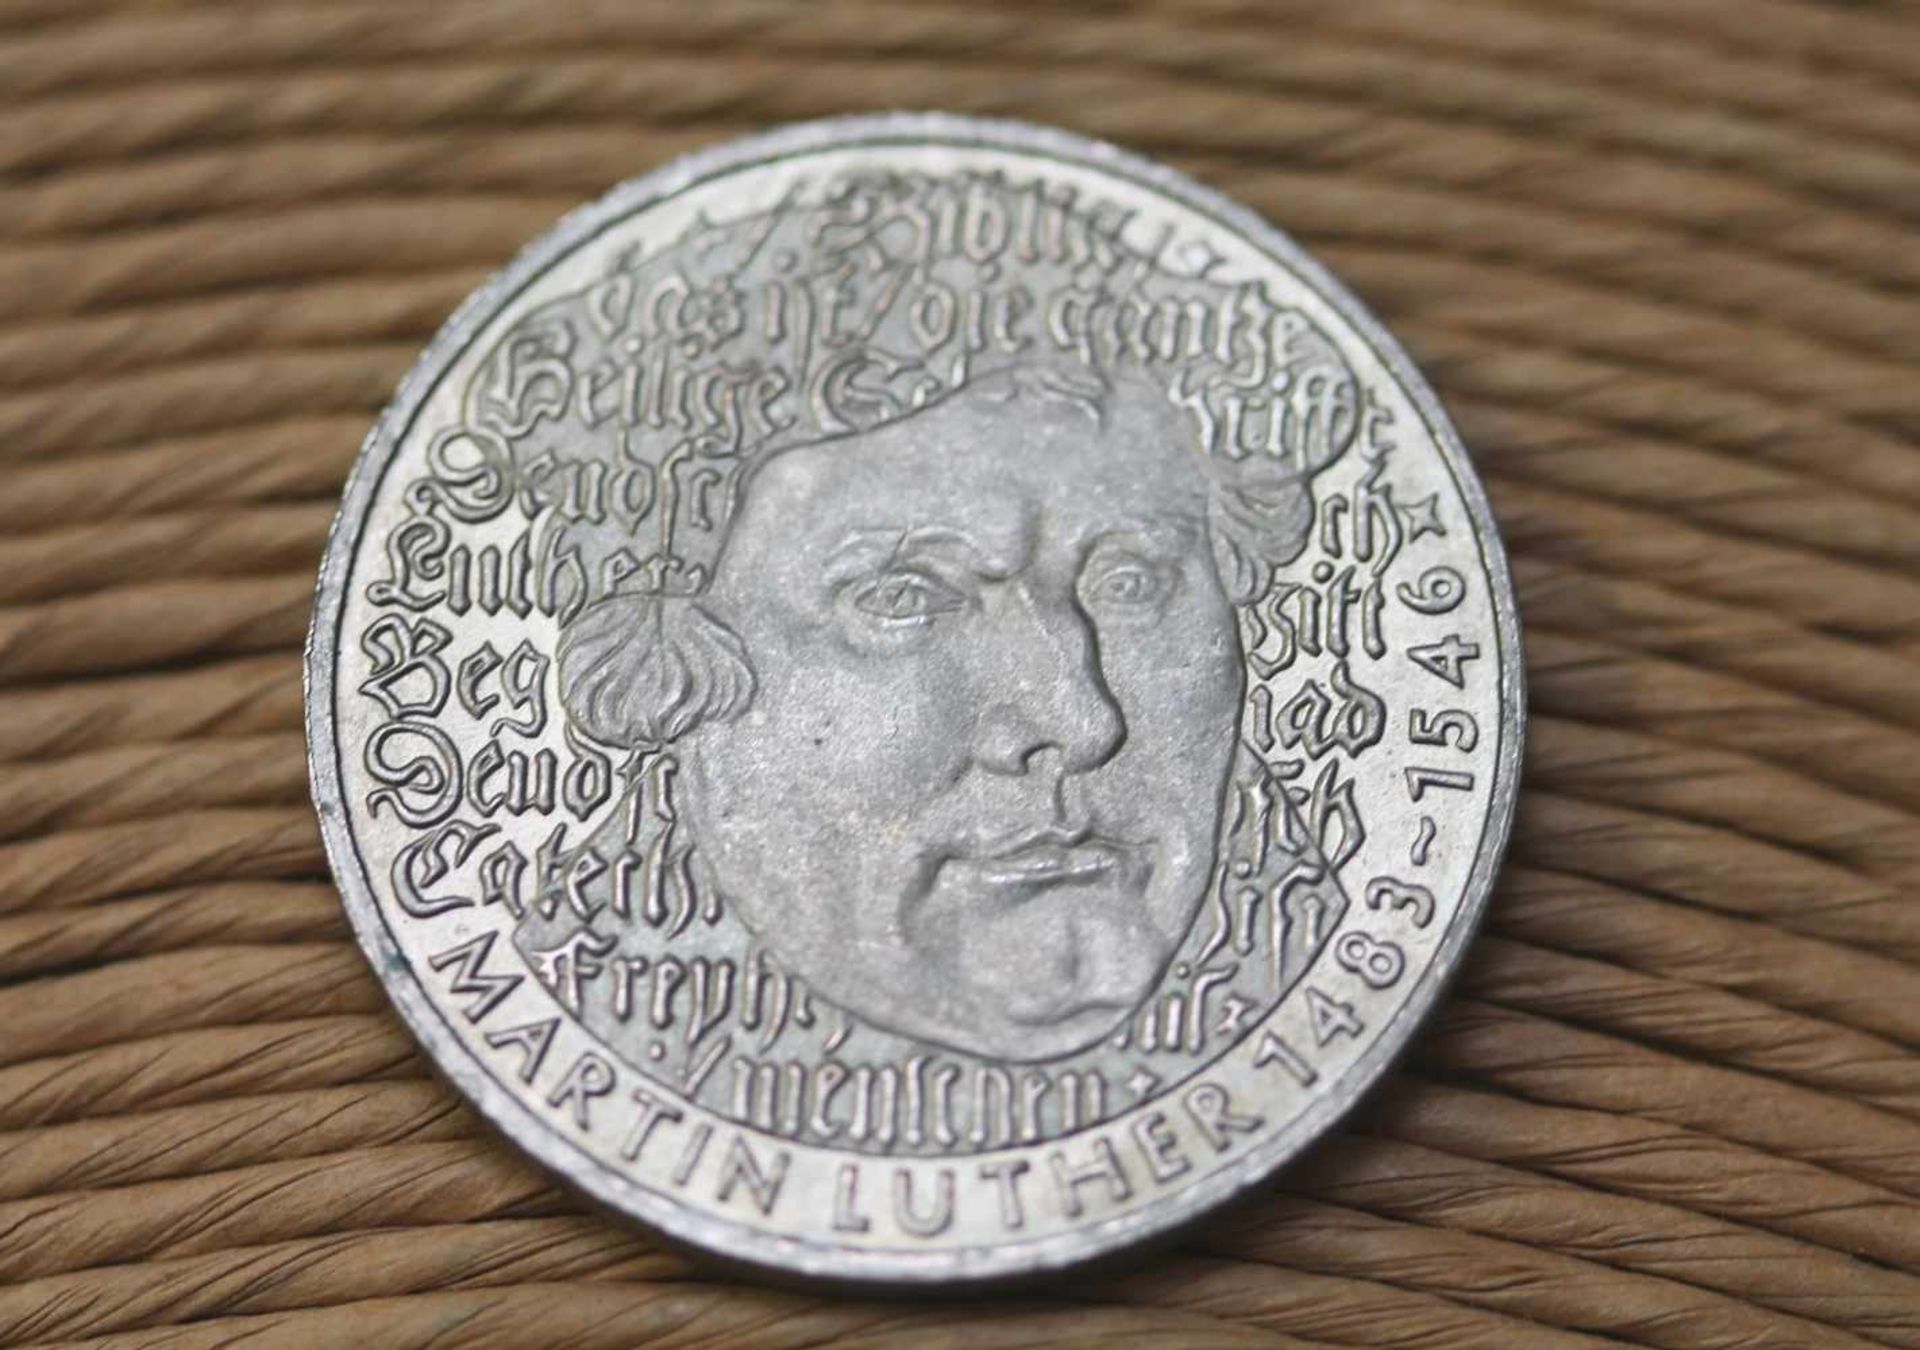 5 DM Münze 1983 Martin Luther, BRD - Bild 2 aus 2